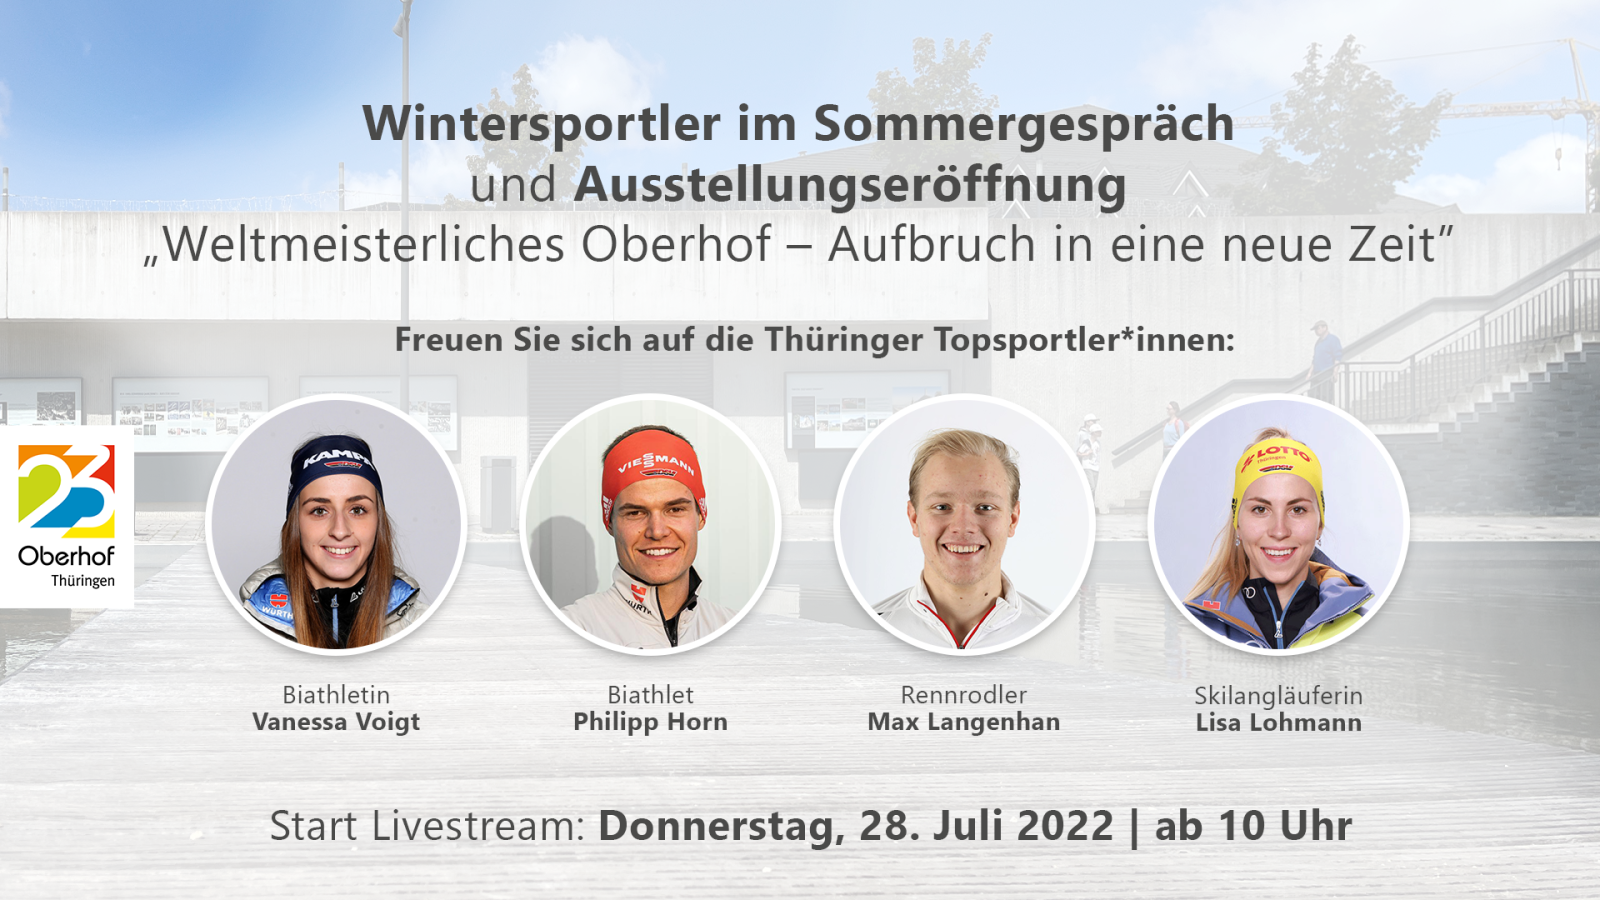 Oberhof 23 - Wintersportler im Sommergespräch